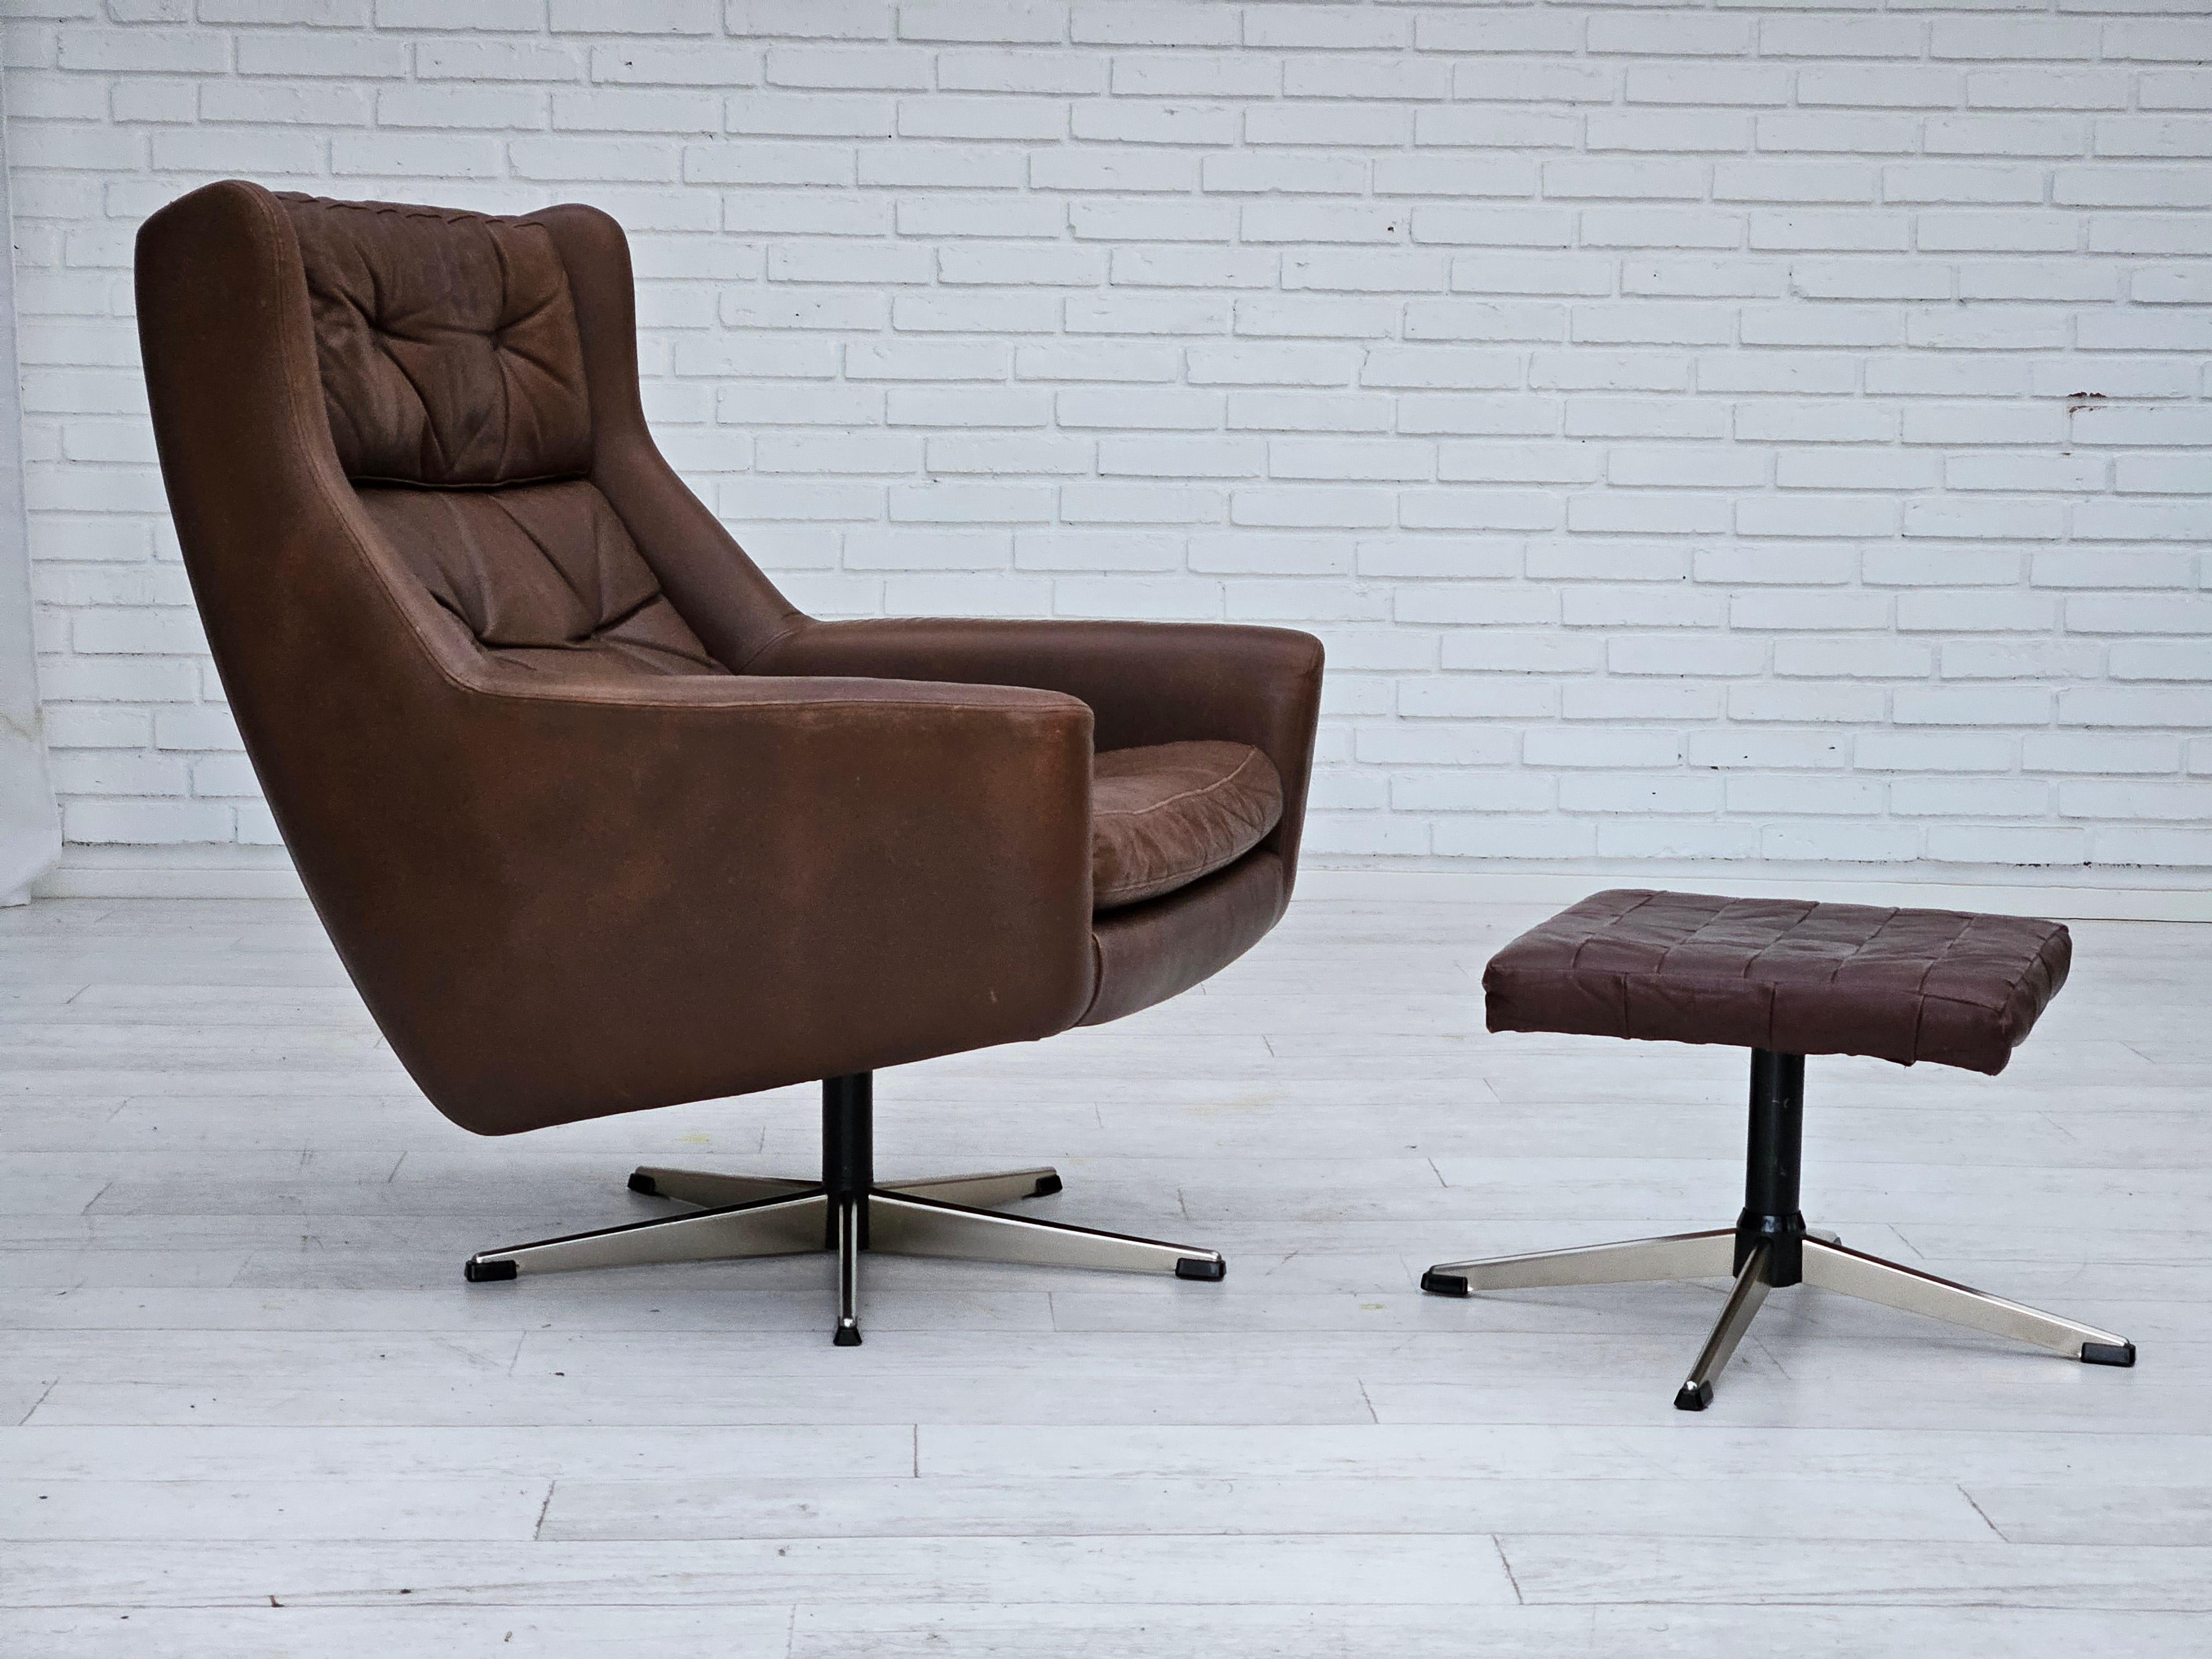 1970, fauteuil pivotant danois avec pouf en bon état d'origine : pas d'odeurs ni de taches. Cuir marron, base en acier chromé. Coussins amovibles. Fabriqué par un fabricant de meubles danois dans les années 1970.